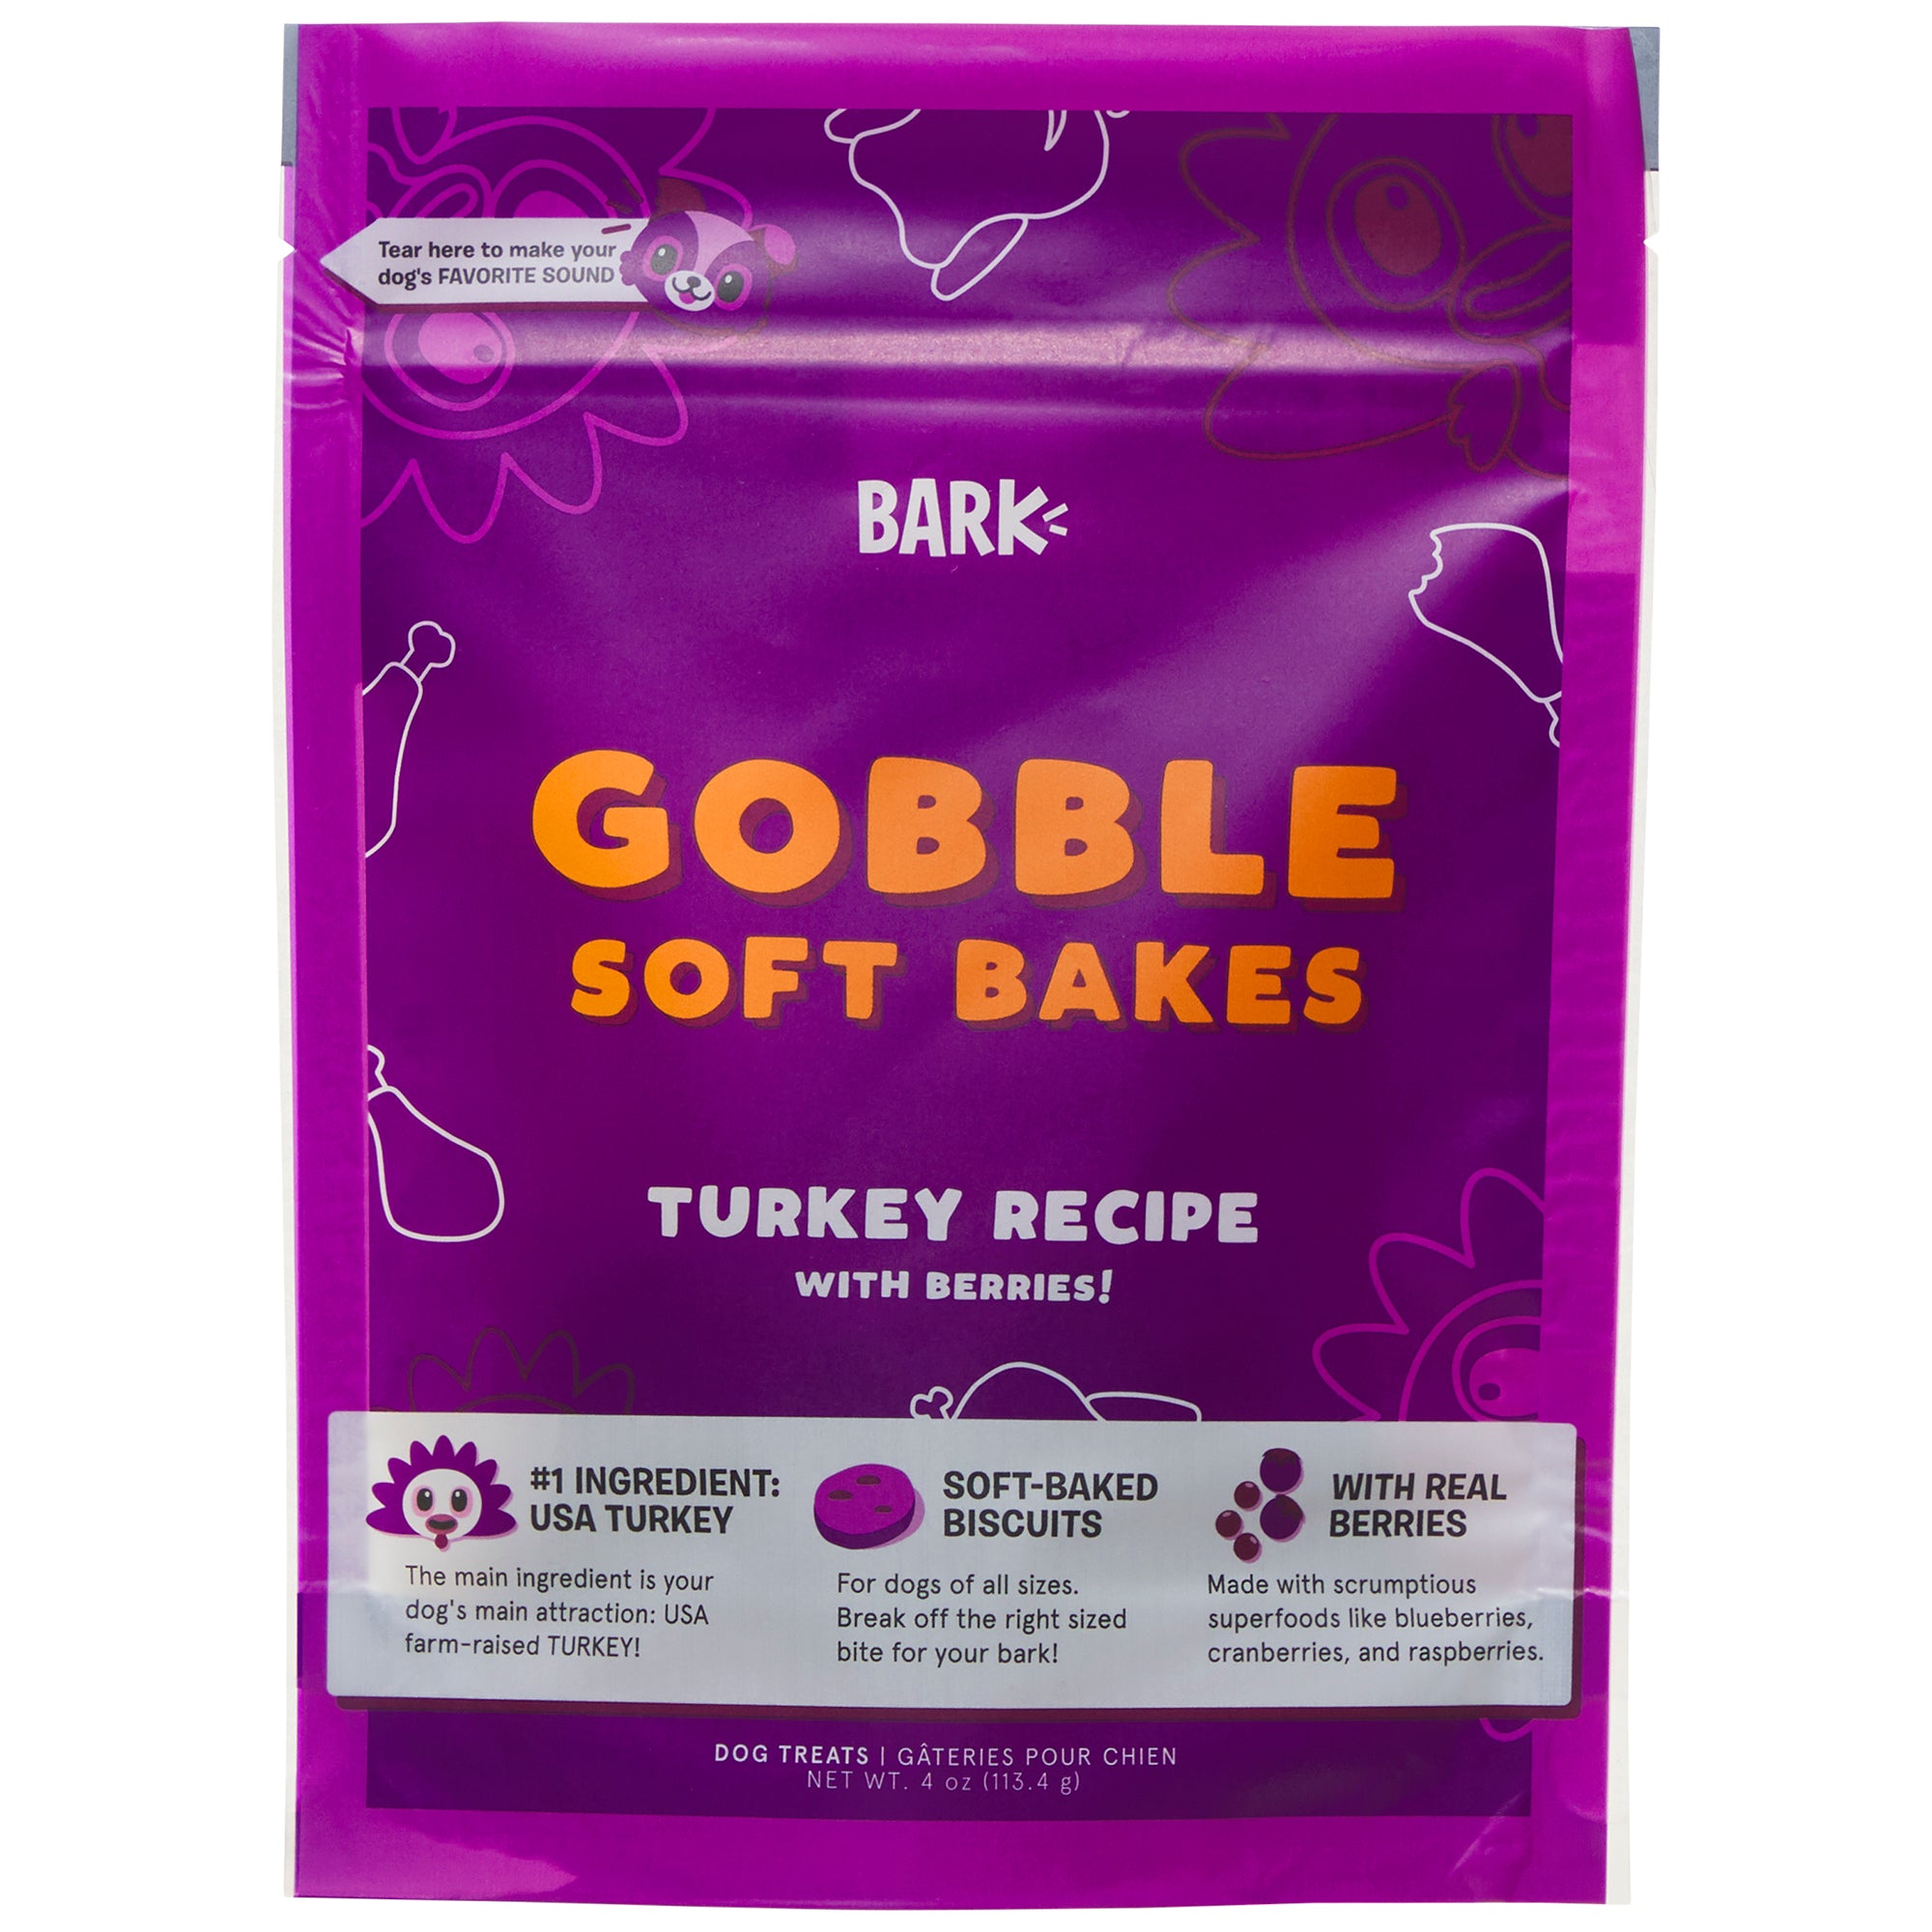 Gobble Soft Bakes